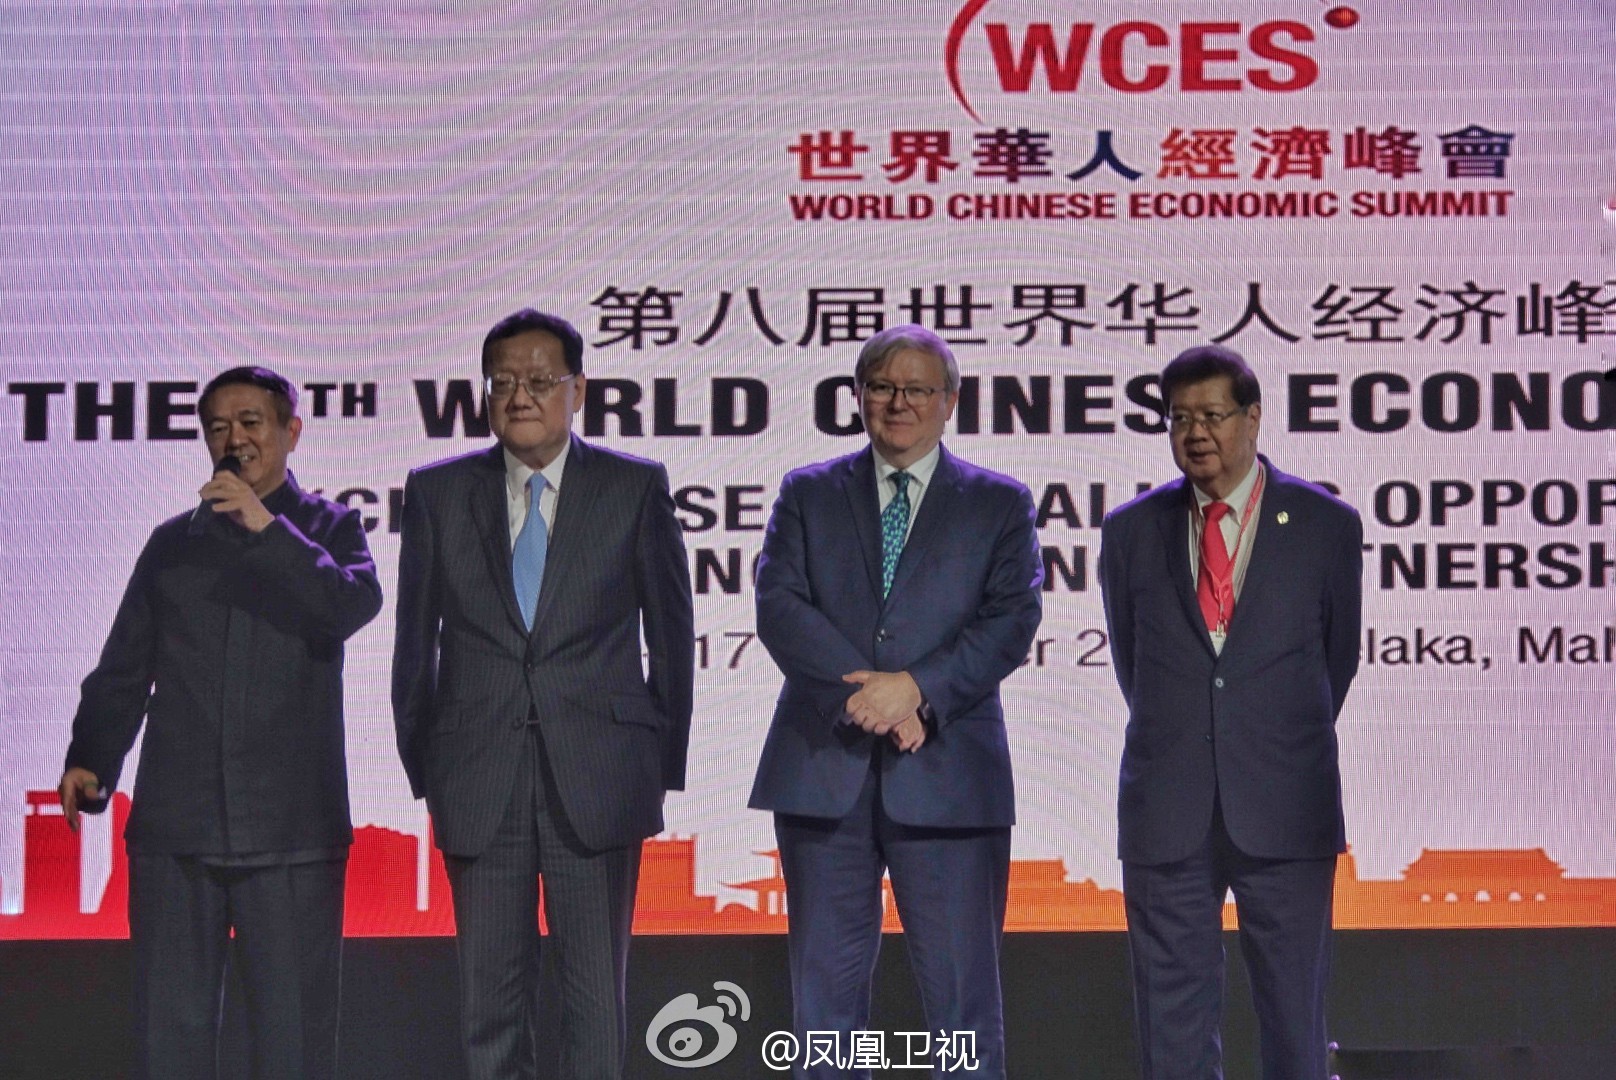 刘长乐先生出席世界华人经济峰会并颁奖